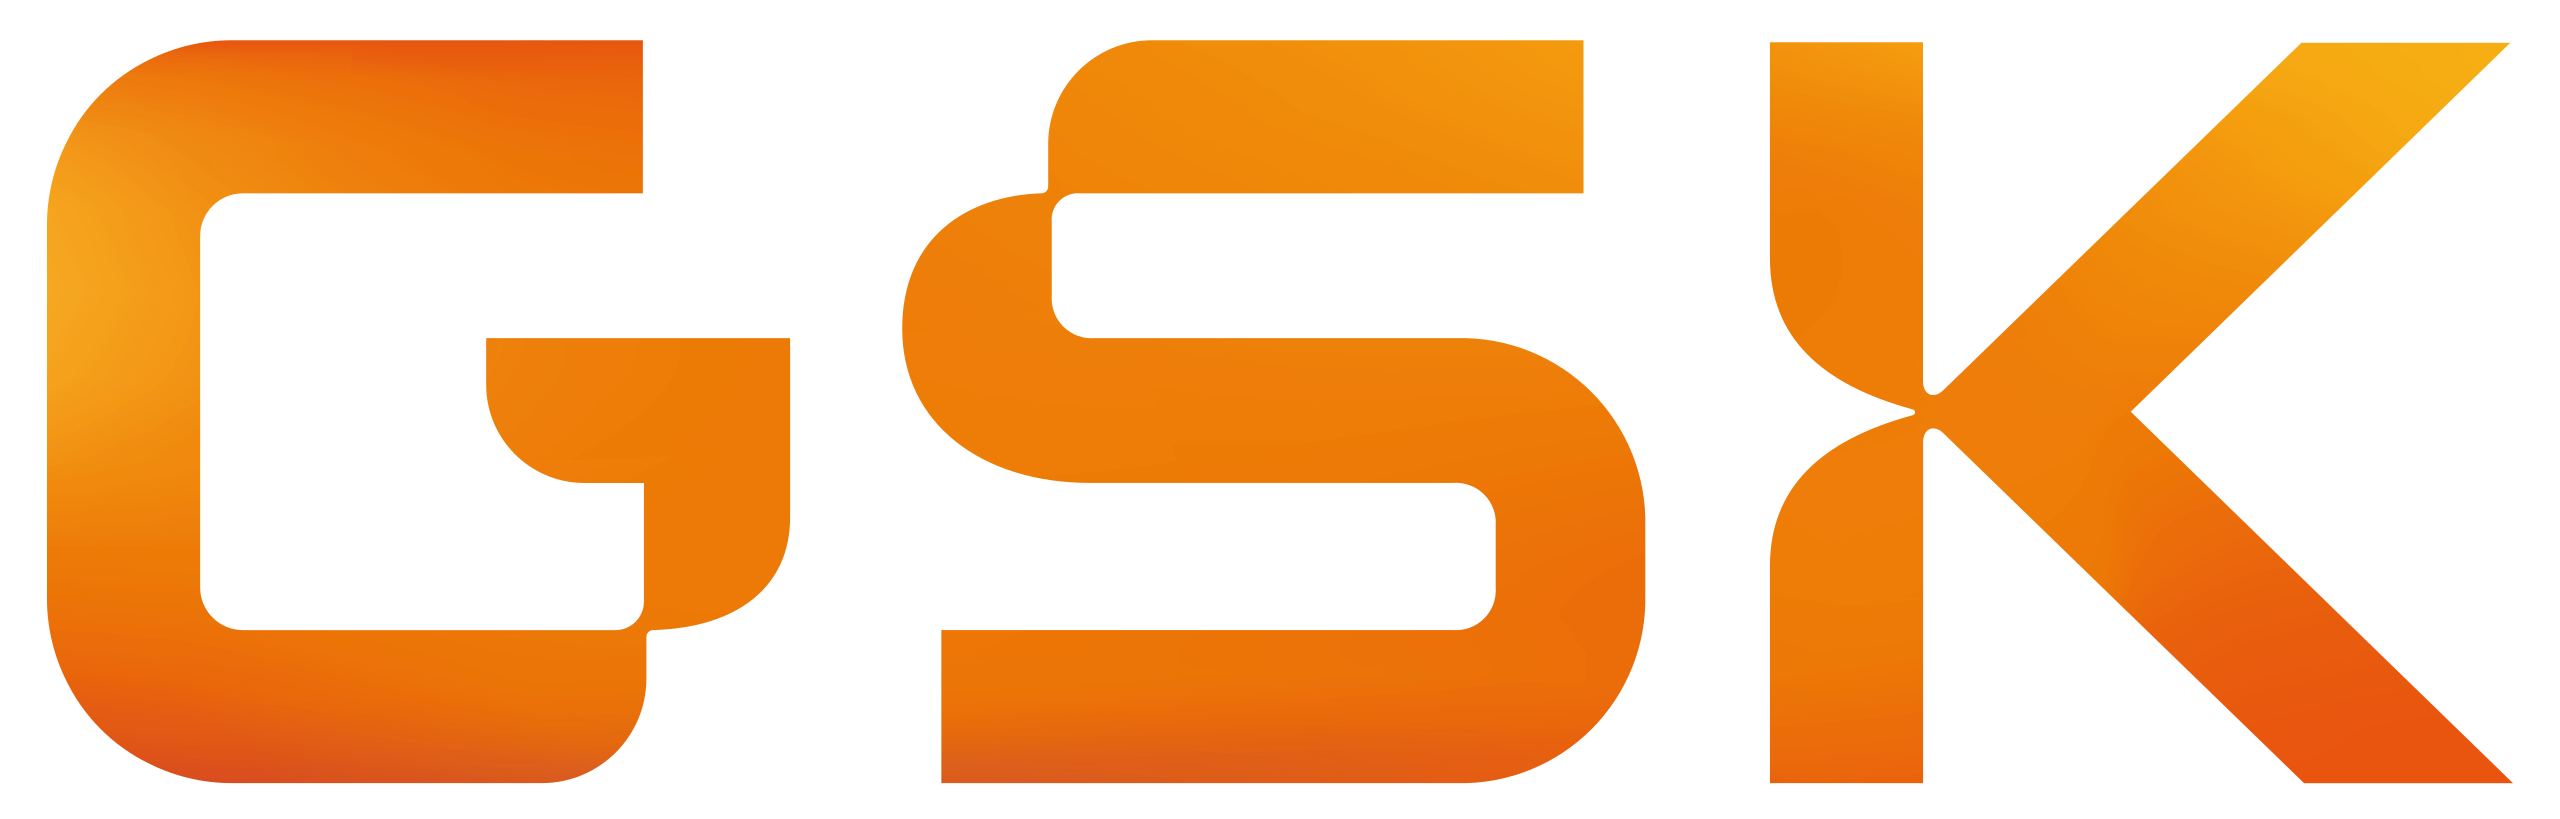 GSK company logo